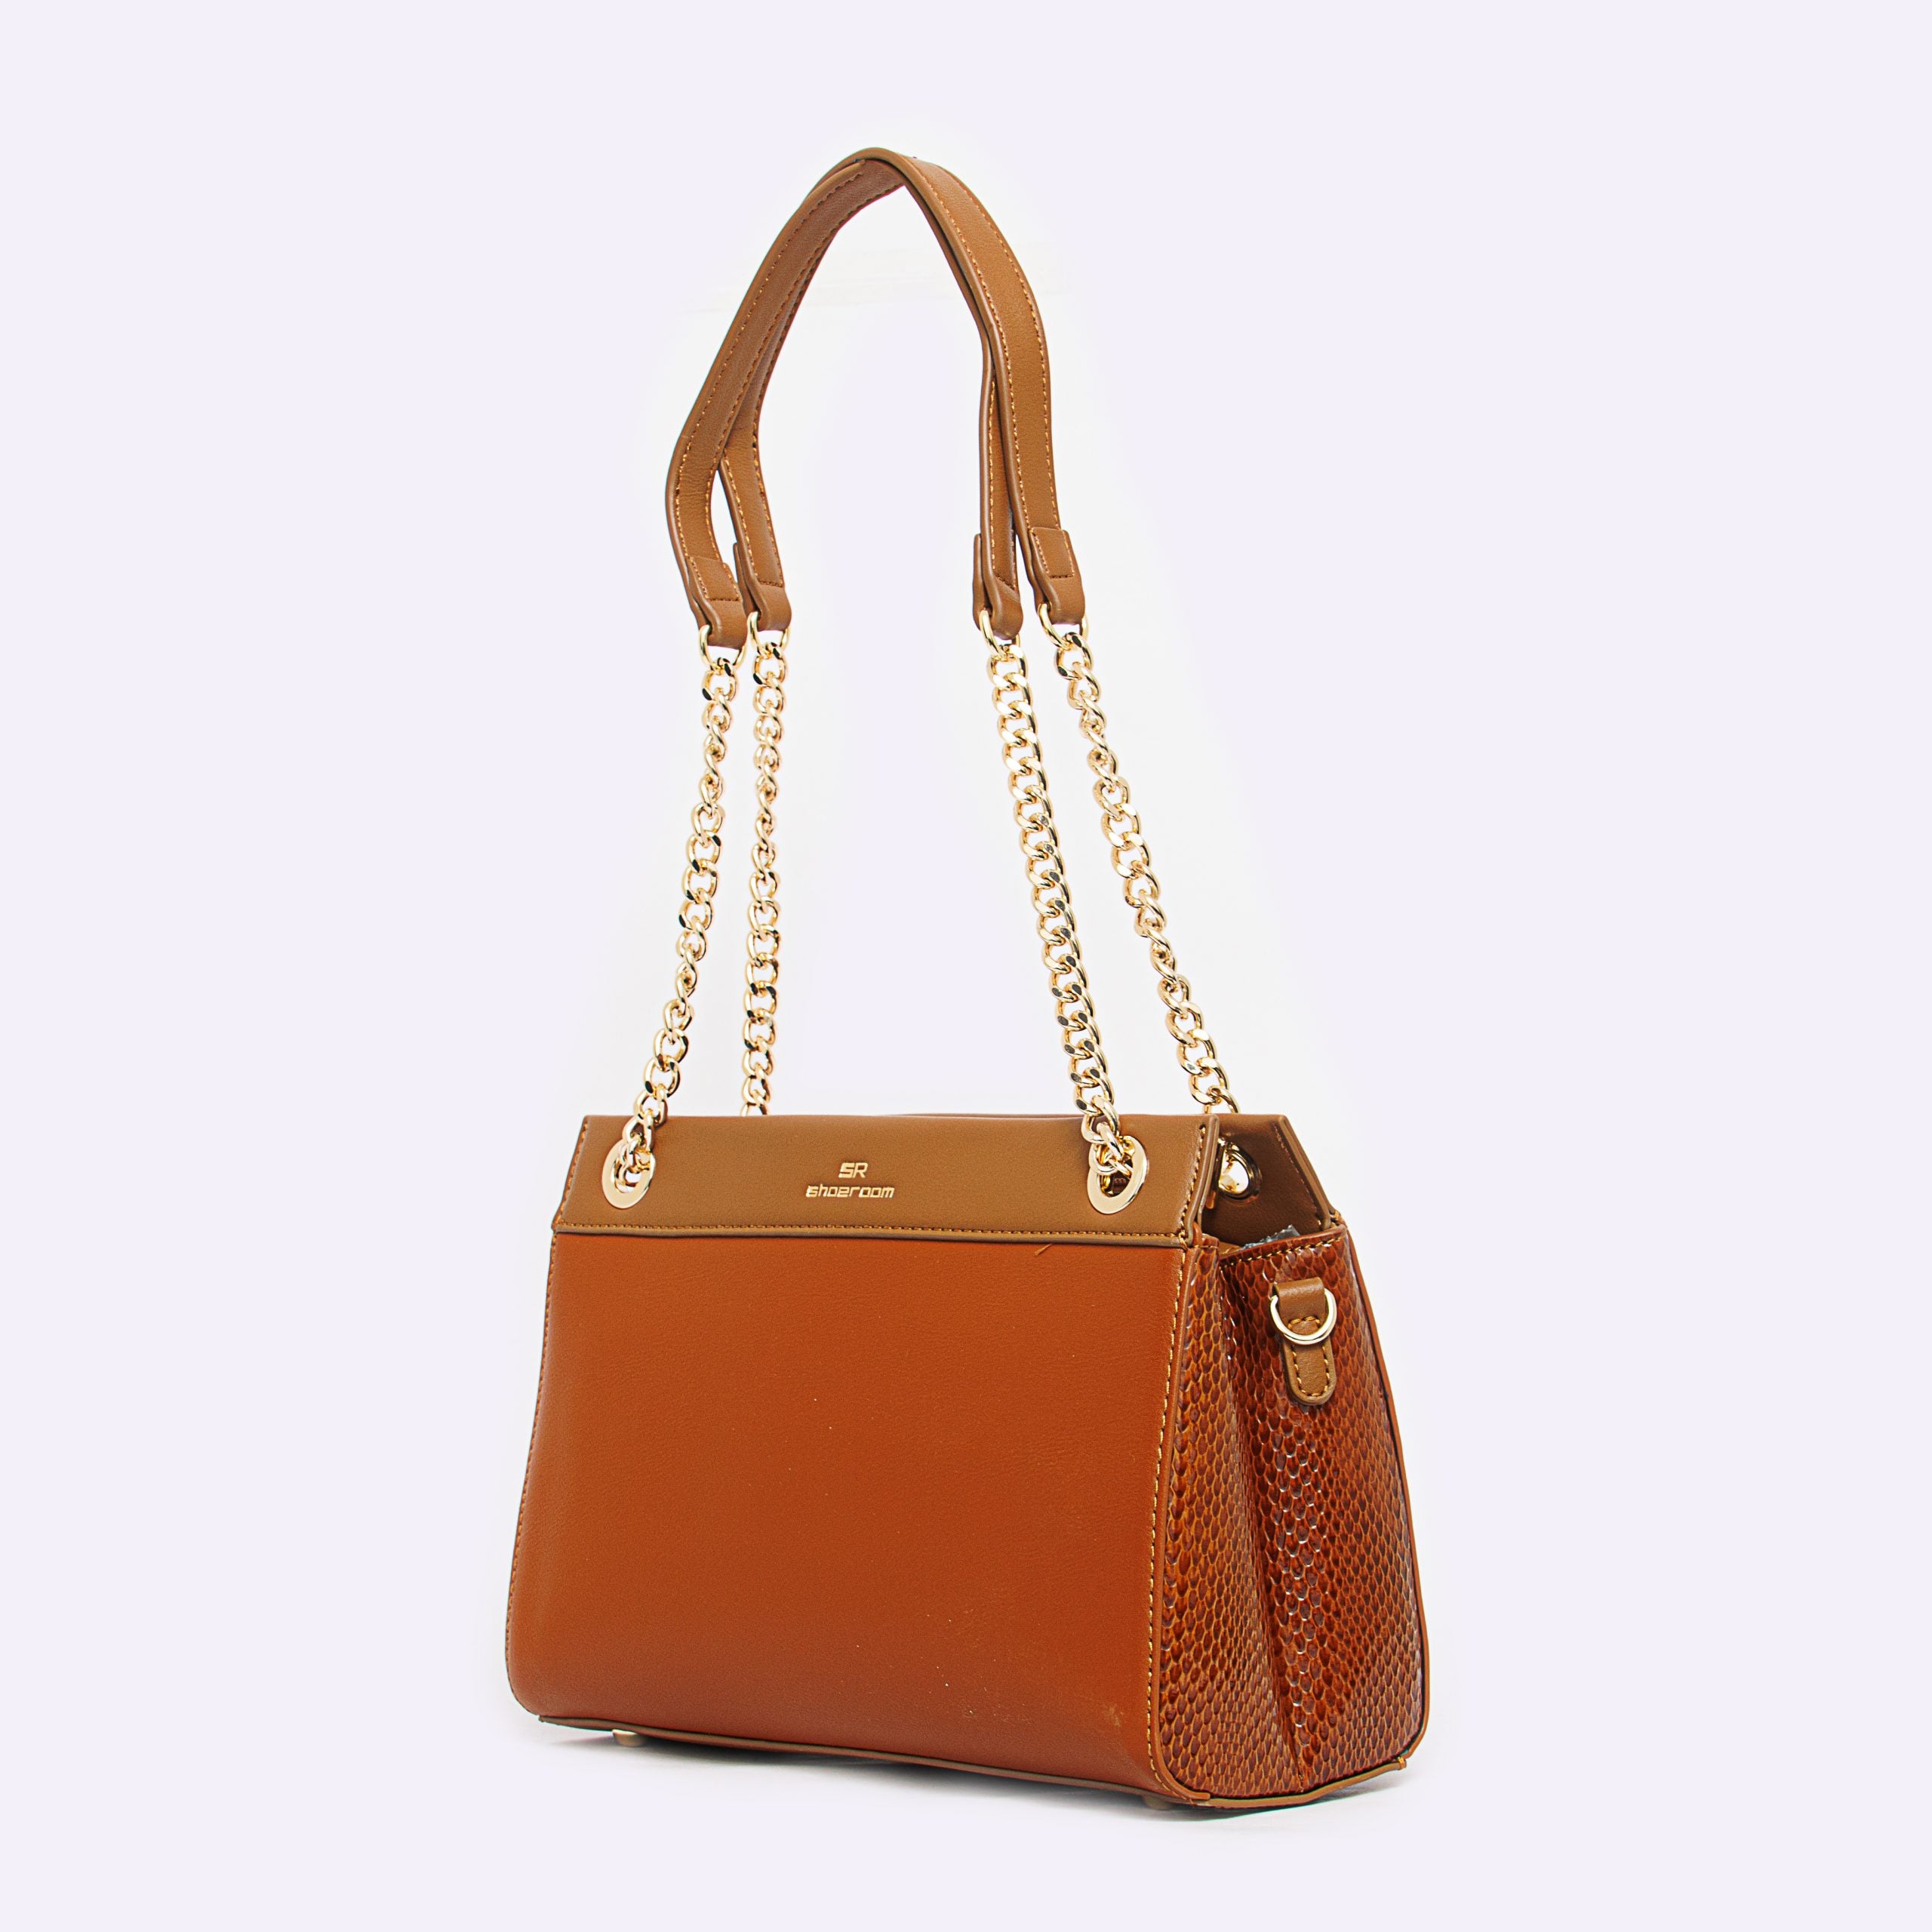 Shoeroom Woman Handbags B1425